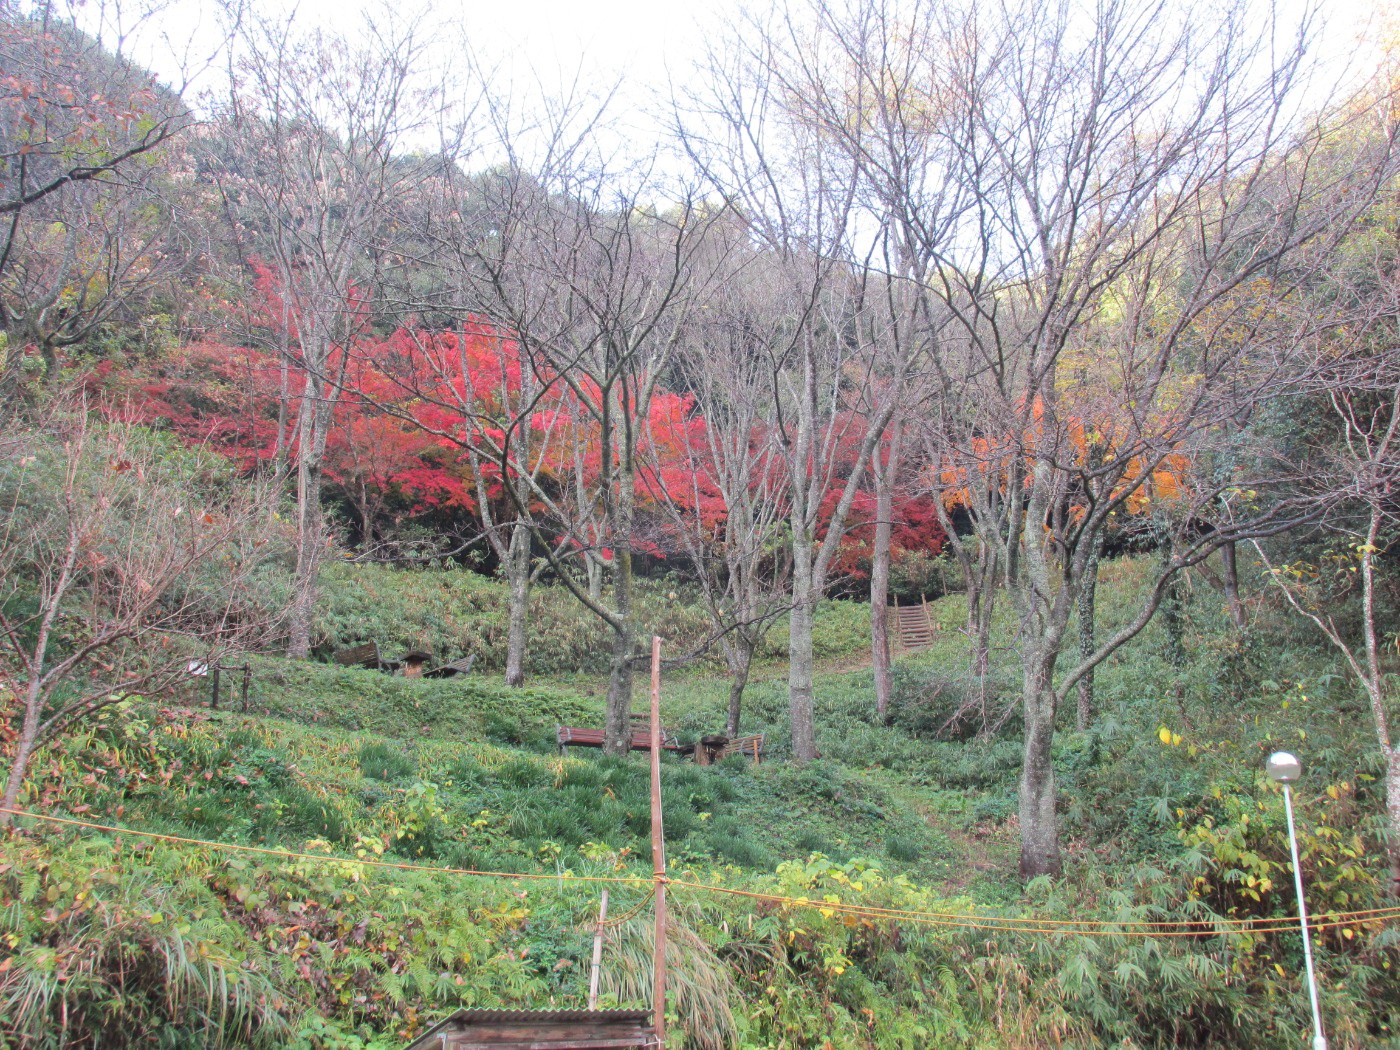 ドングリランドも一気に紅葉しています 香川の森林公園 ドングリランド